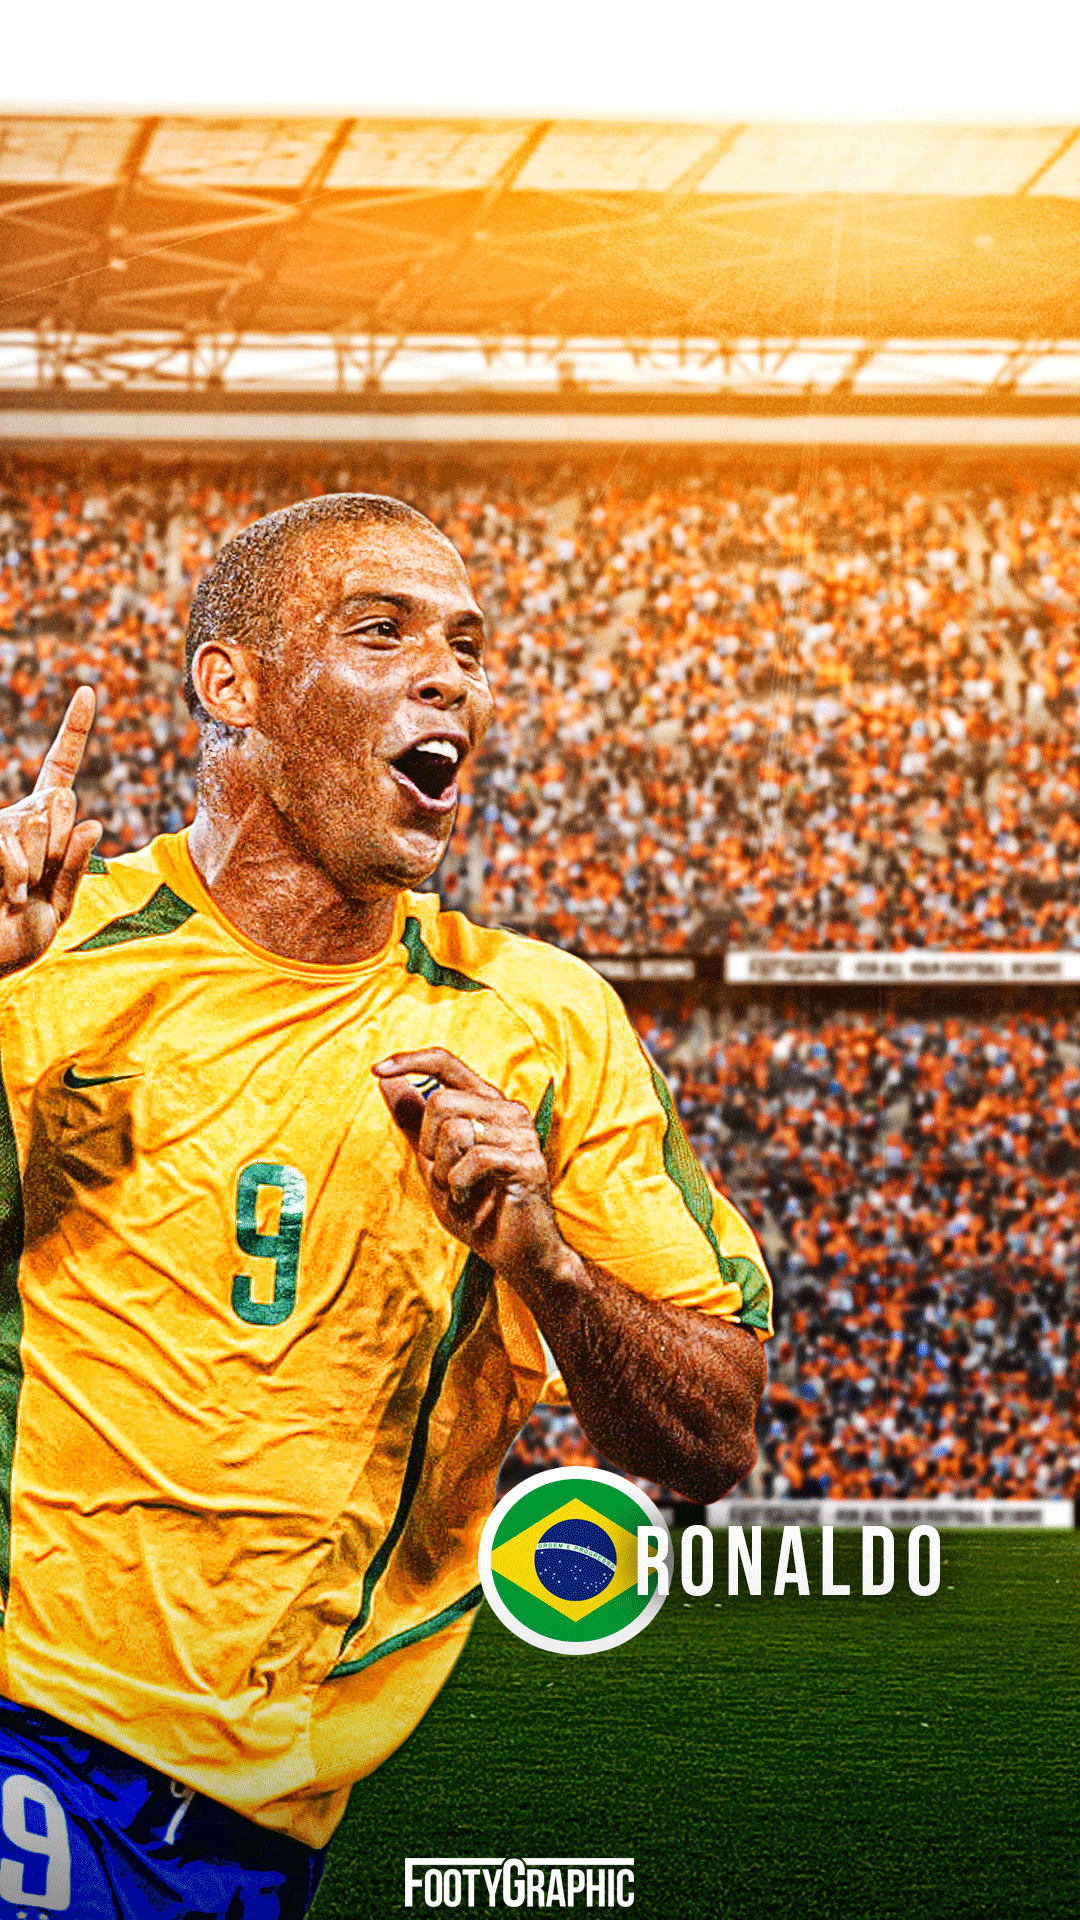 Ronaldo De Lima Wallpapers: Những tấm ảnh nền Ronaldo De Lima sẽ khiến bạn cảm thấy khó lòng từ chối. Hãy tận hưởng vẻ đẹp của một trong những cầu thủ bóng đá vĩ đại nhất mọi thời đại và để trải nghiệm này tràn đầy năng lượng tích cực.